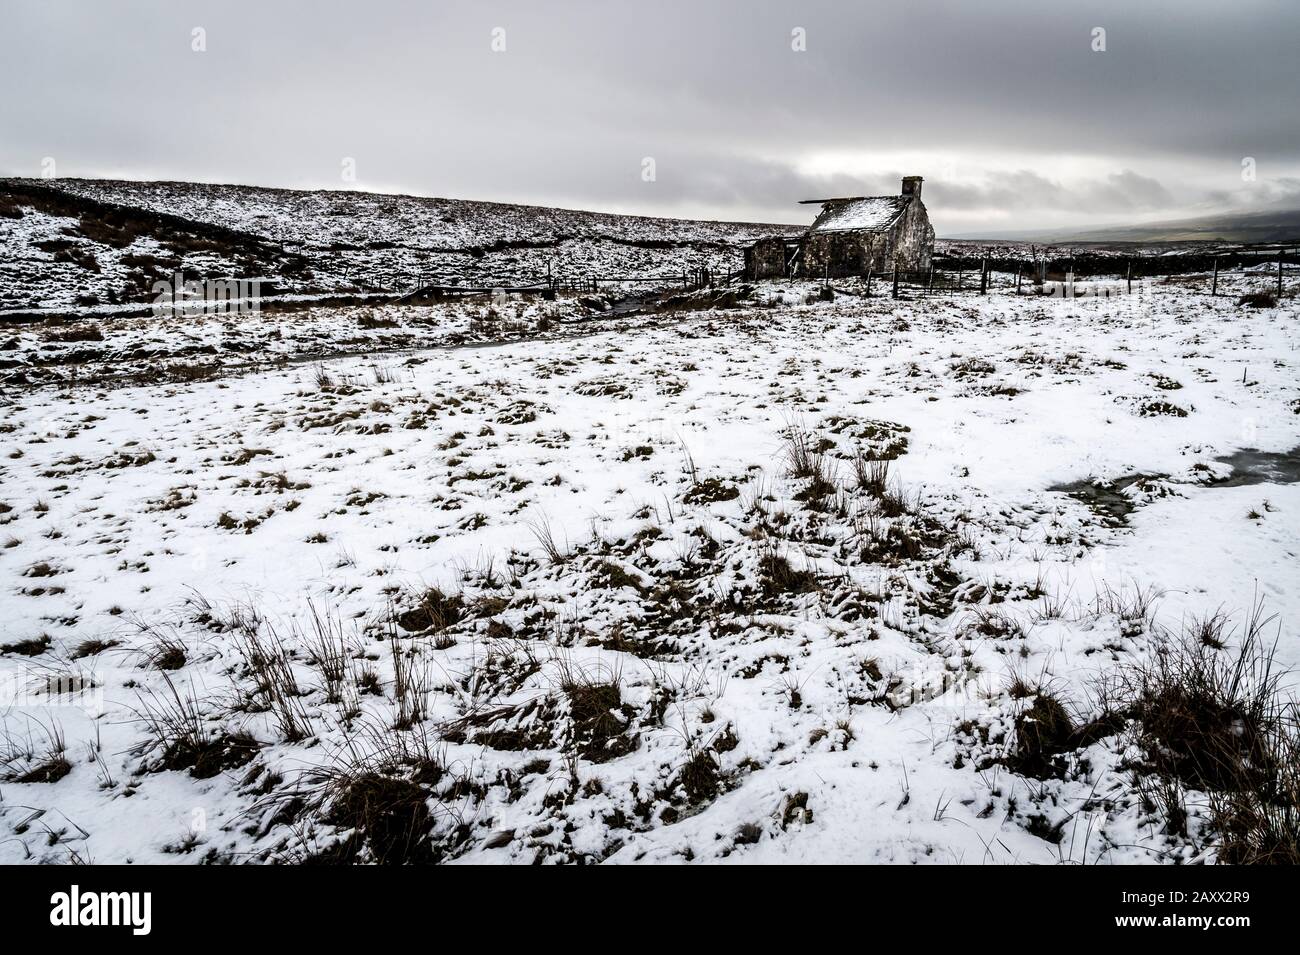 Paysage d'hiver sauvage du Yorkshire Dales en monochrome à la cabane de tir de Gearstones abandonnée à Ribblehead sur la route d'Ingleton Hawes Banque D'Images